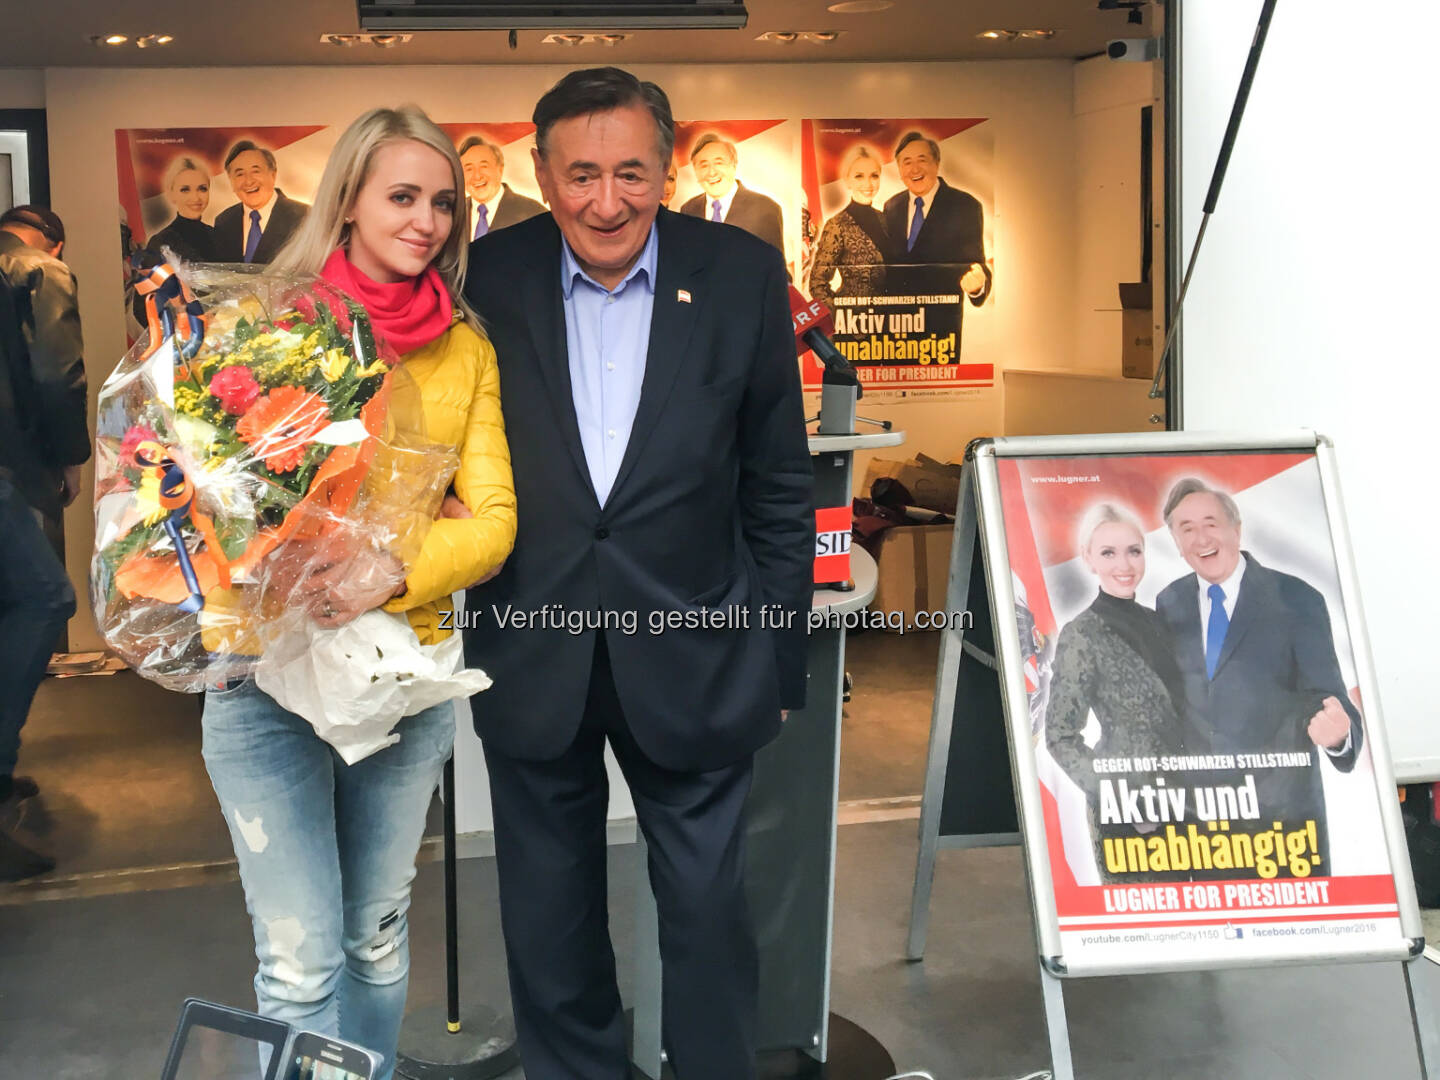 Cathy und Richard Lugner : Lugners Wahlschlusskundgebungsmarathon in Wien: 1.000 Besucher am Stephansplatz
 : Österreich zurück an die Spitze der EU bringen : Fotocredit: Büro Lugner